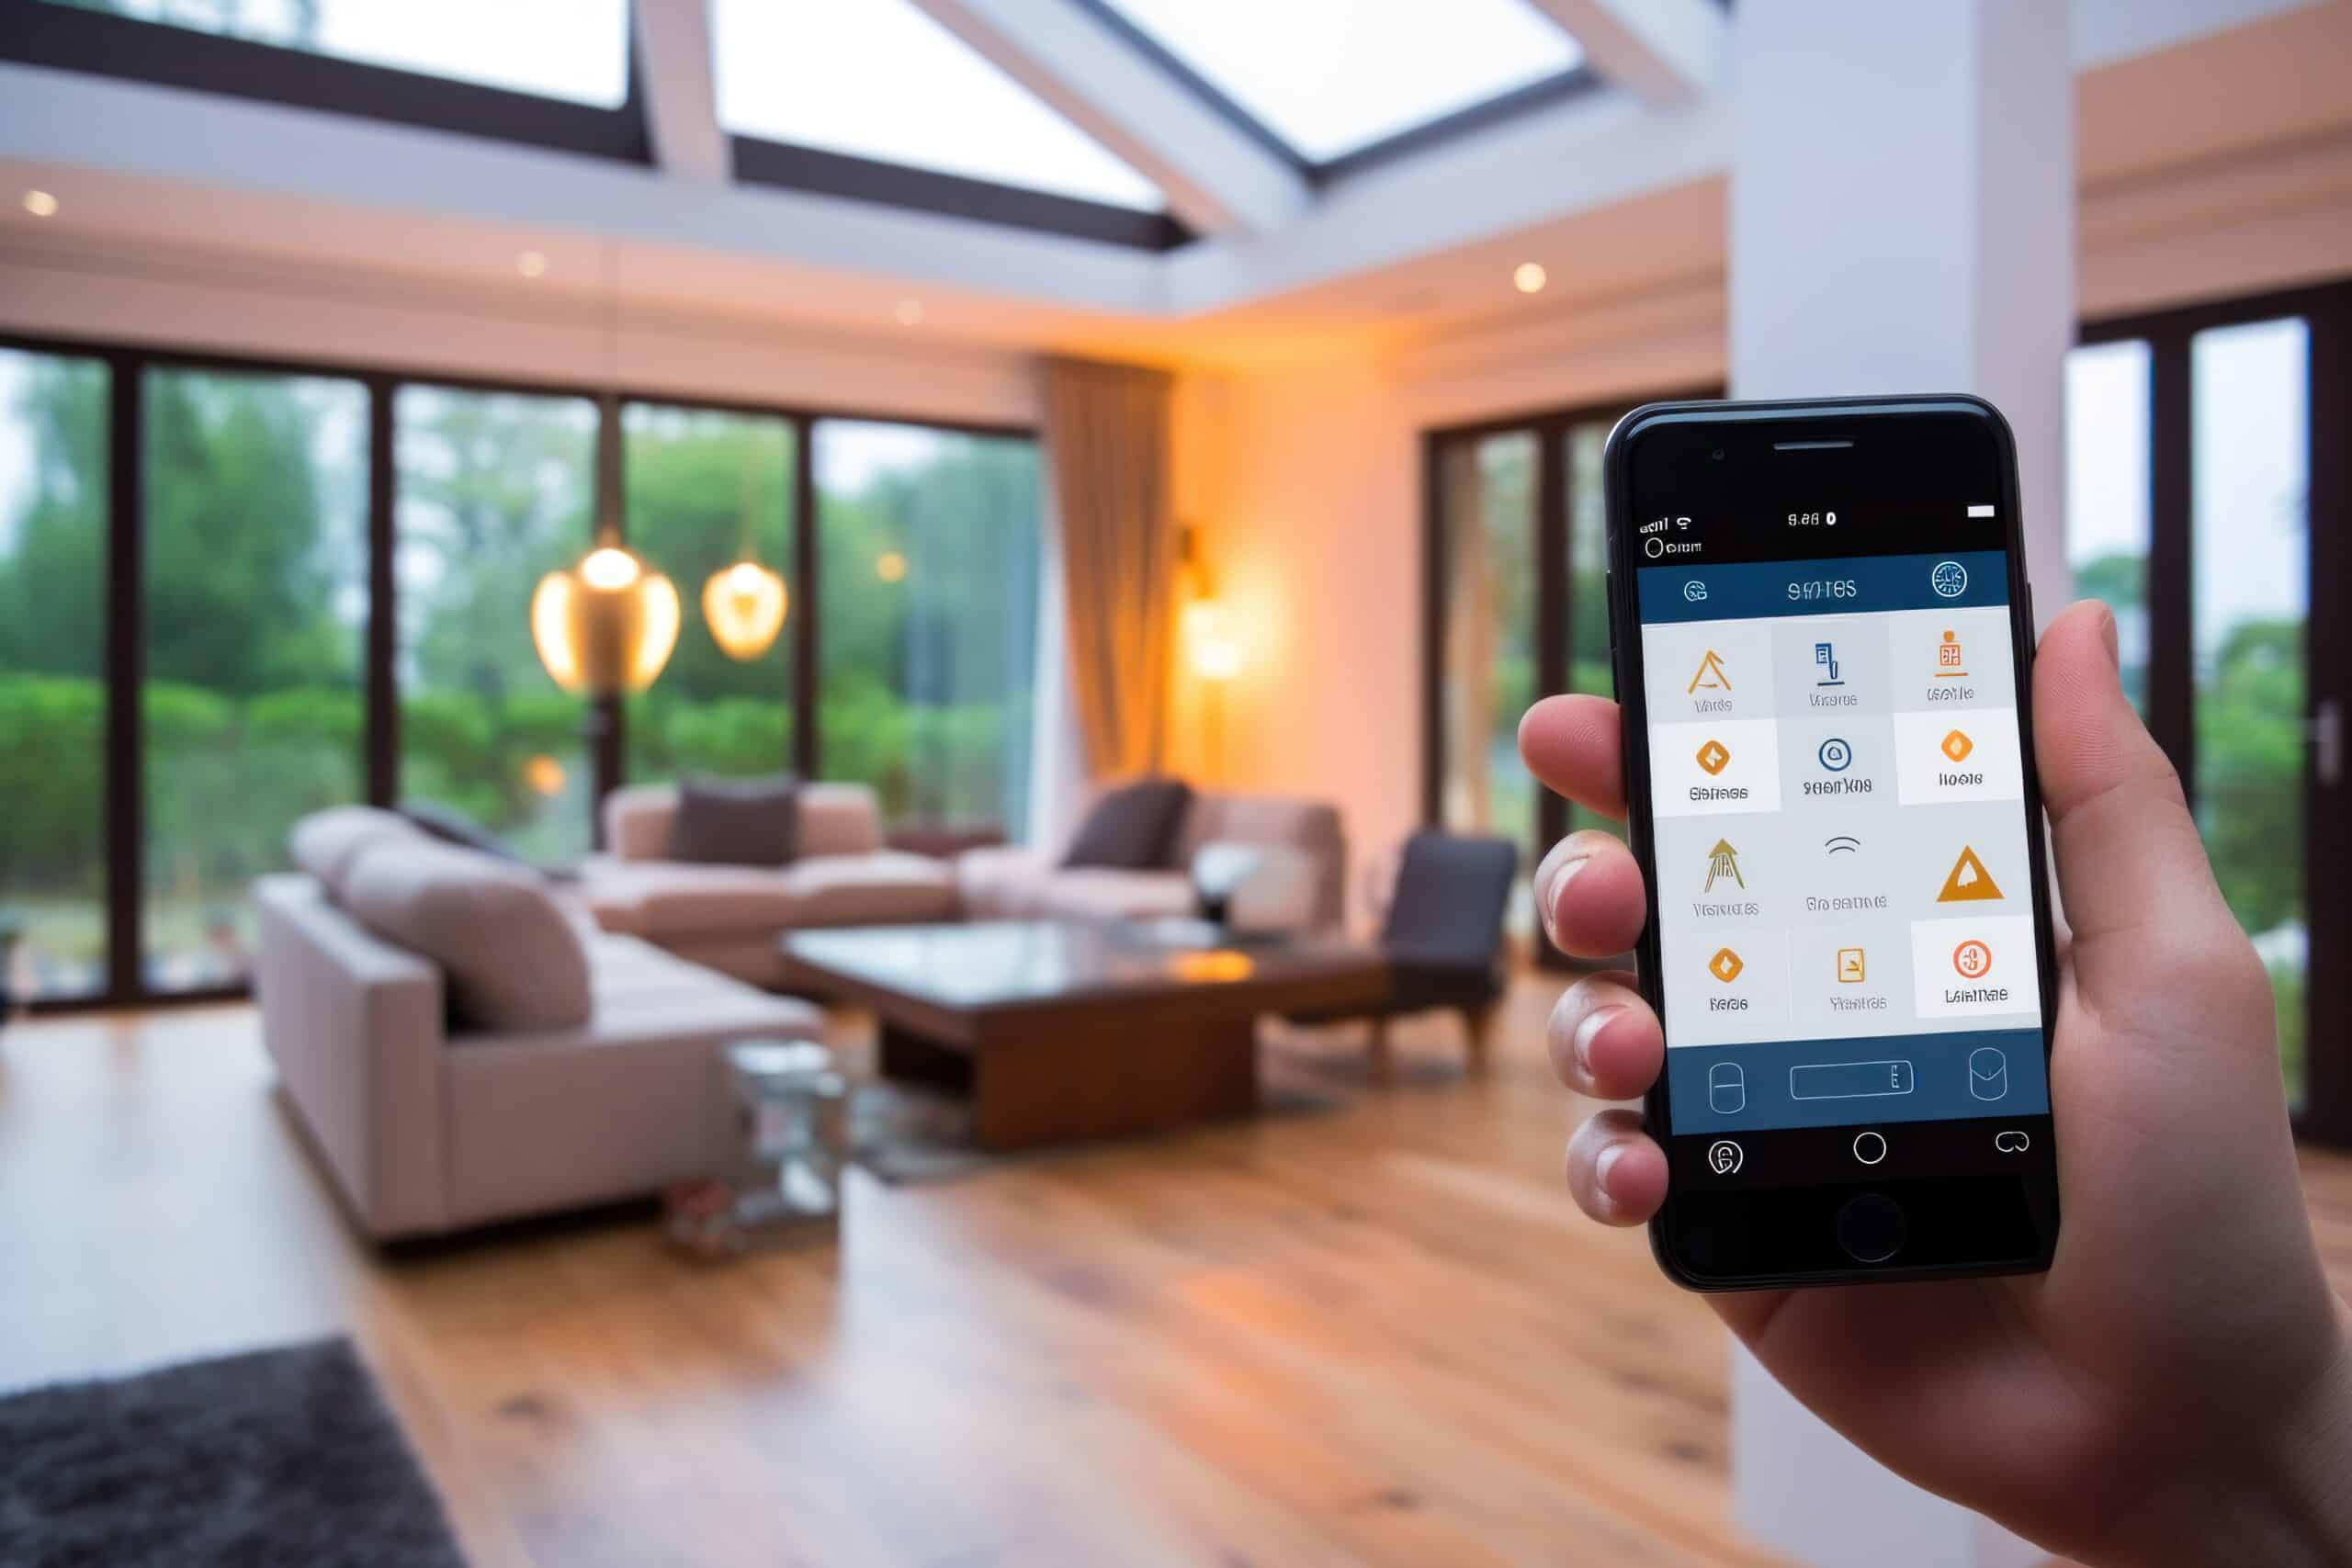 www.appr.com : What Do I Need For Alexa Smart Home?